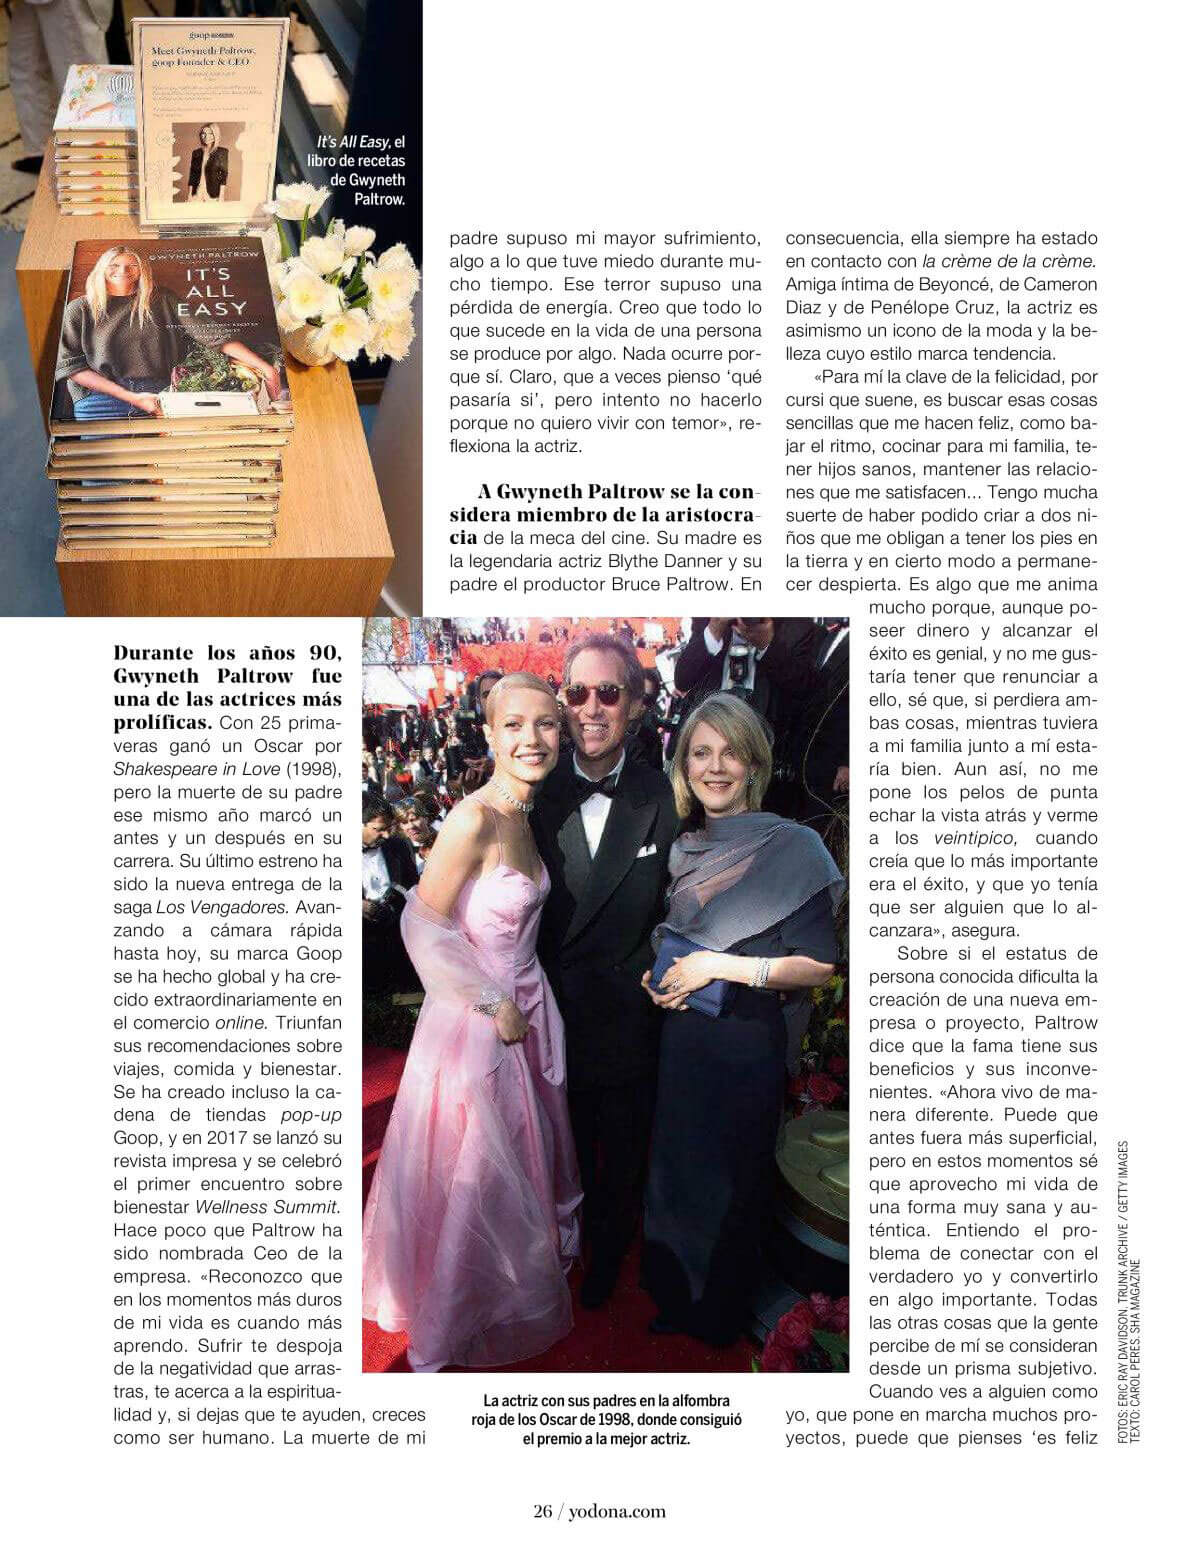 Gwyneth Paltrow in Yo Dona Magazine, June 2018 Issue